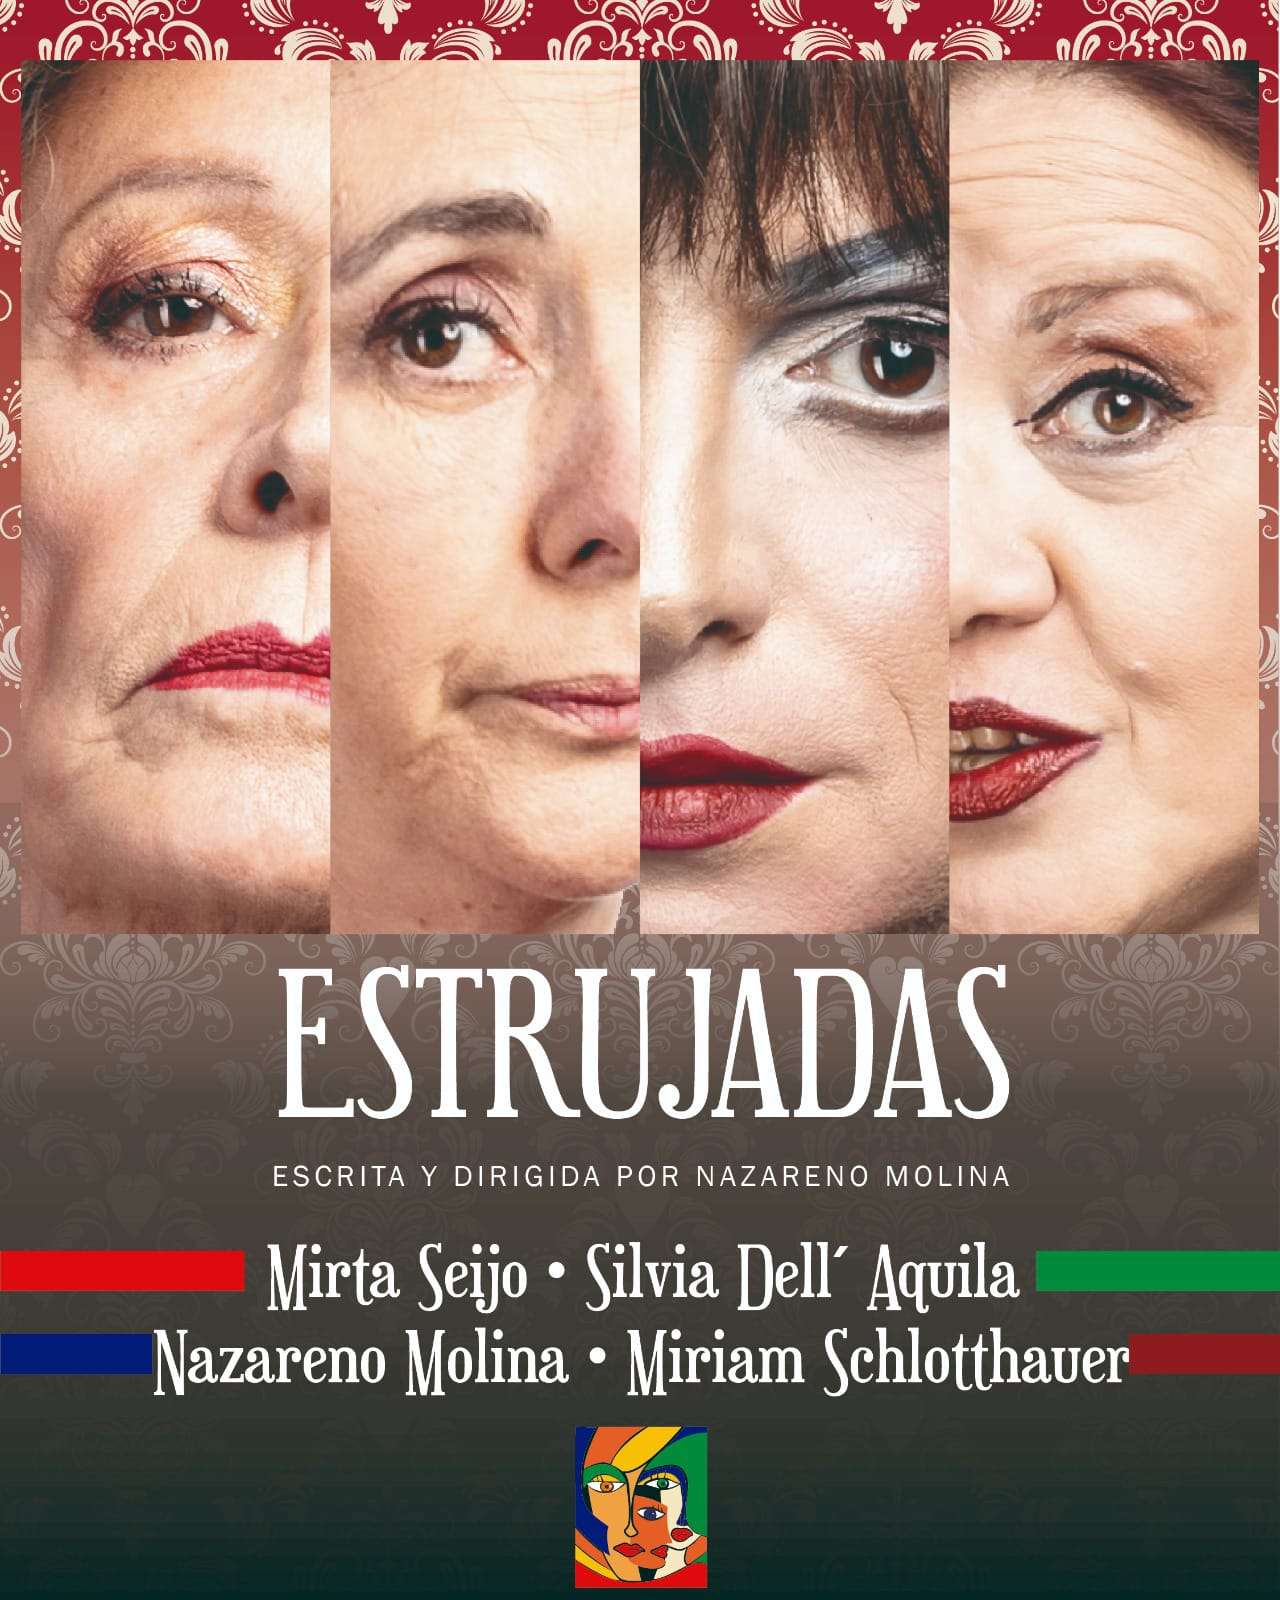 Teatro Italia, sábado 4, 21 hs. Se presentará la obra "ESTRUJADAS", de Nazareno Molina